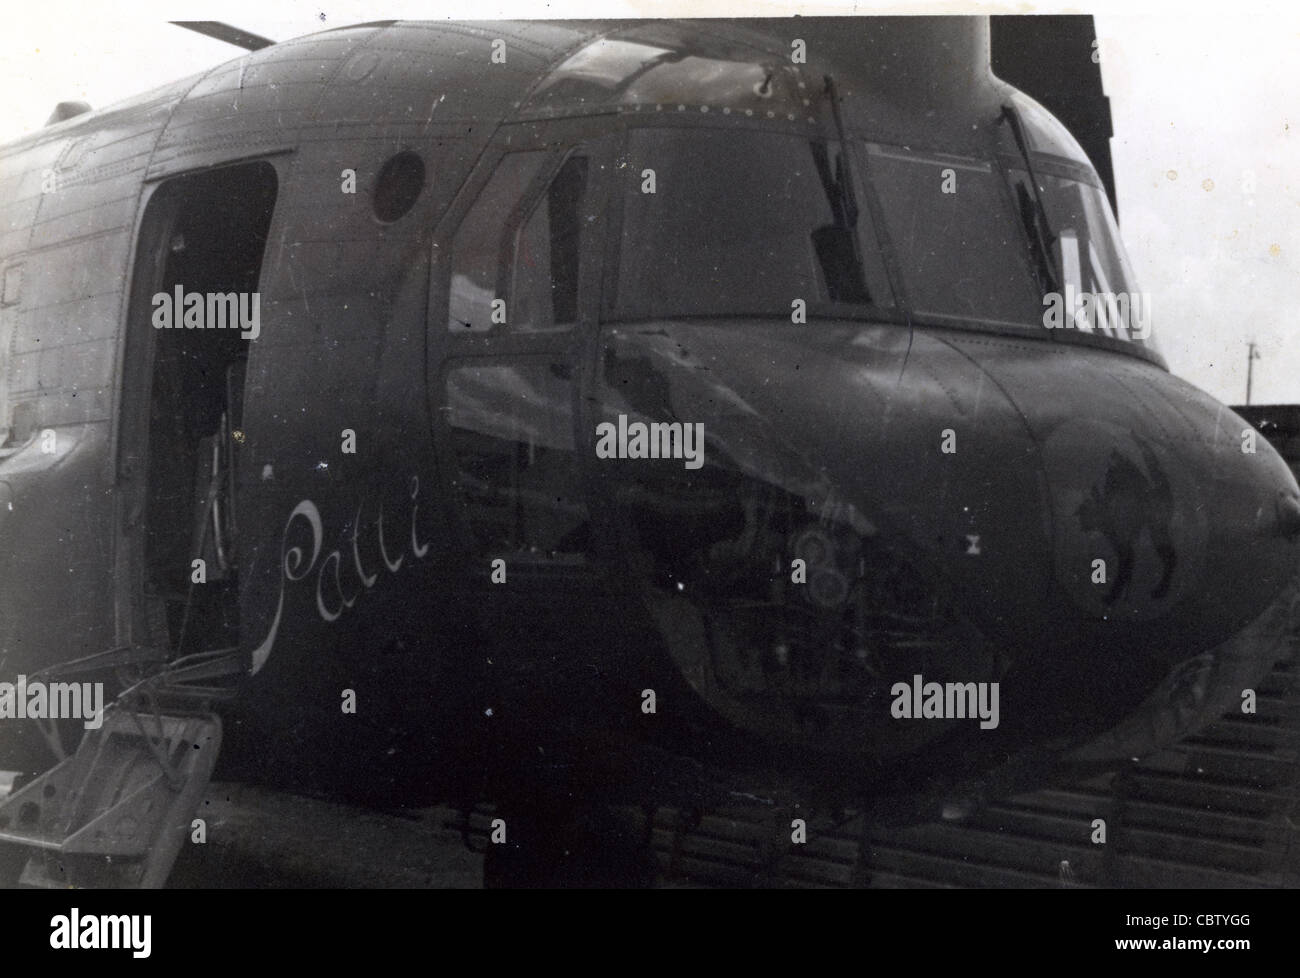 Gros plan du nez de l'hélicoptère 213e art Aviation Company (Assault Support Hélicoptère) chats noirs qui était une unité de Chinook. Banque D'Images